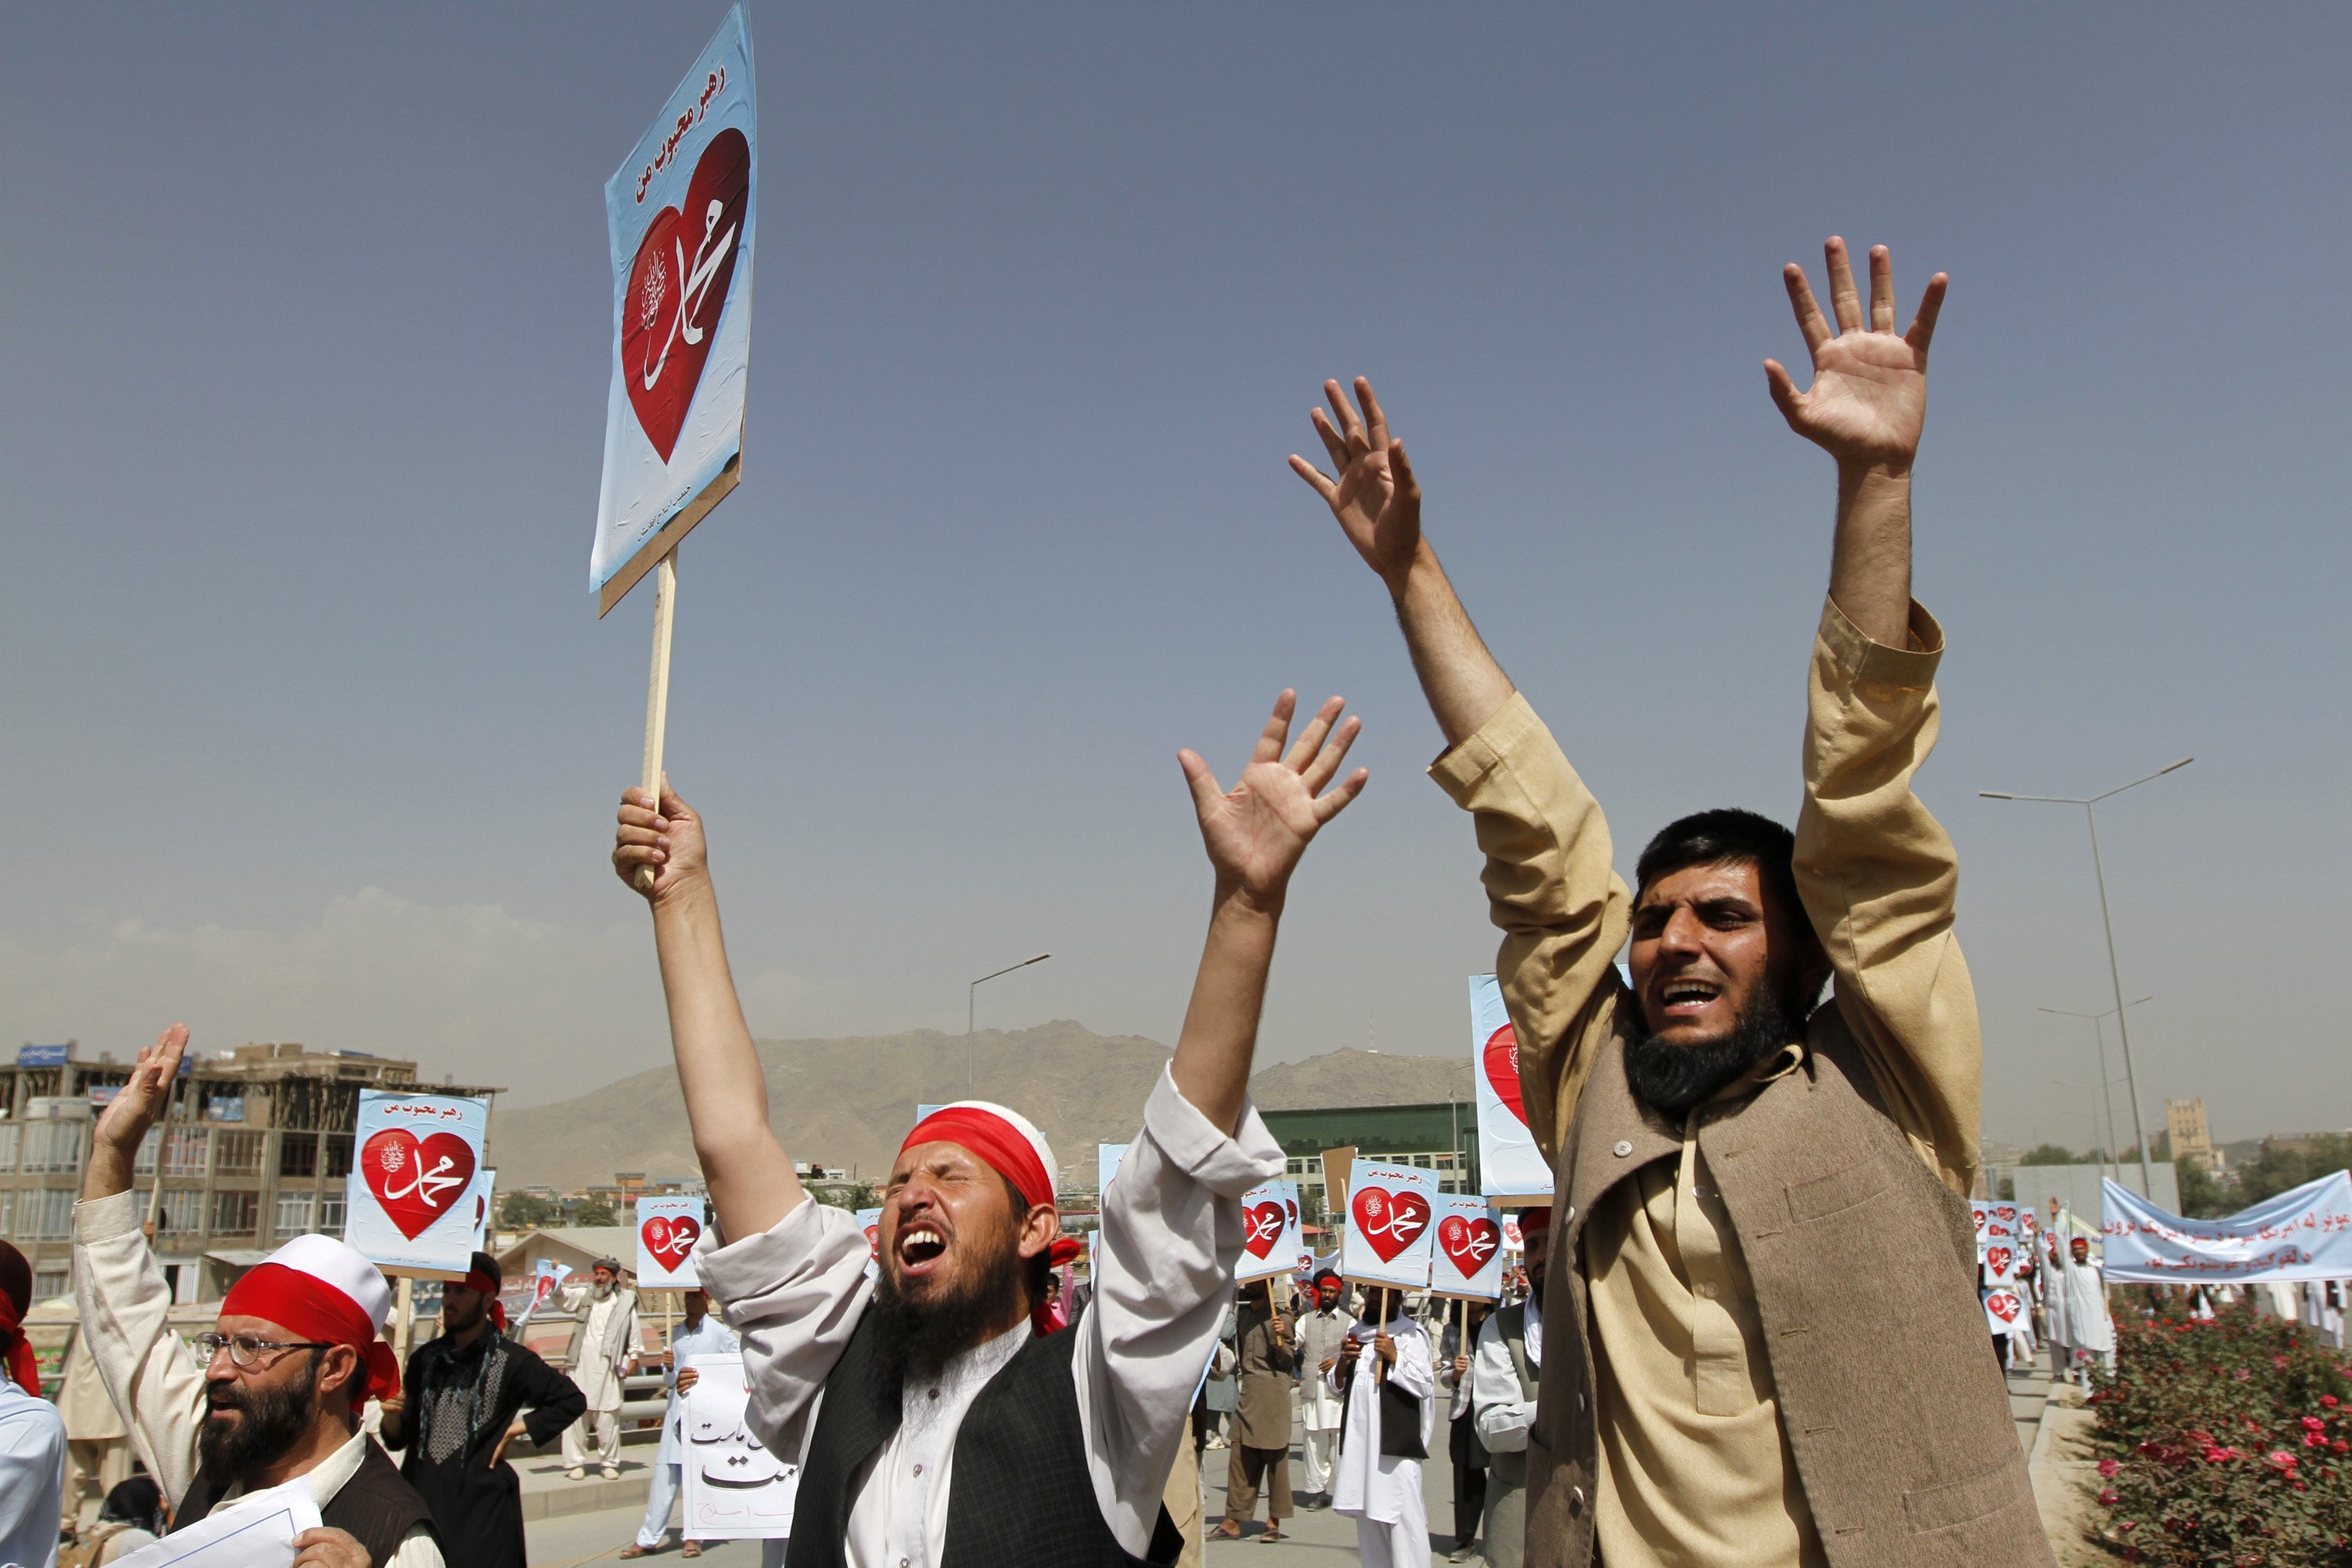 Συνεχίζονται οι διαδηλώσεις για την αντι- ισλαμική ταινία